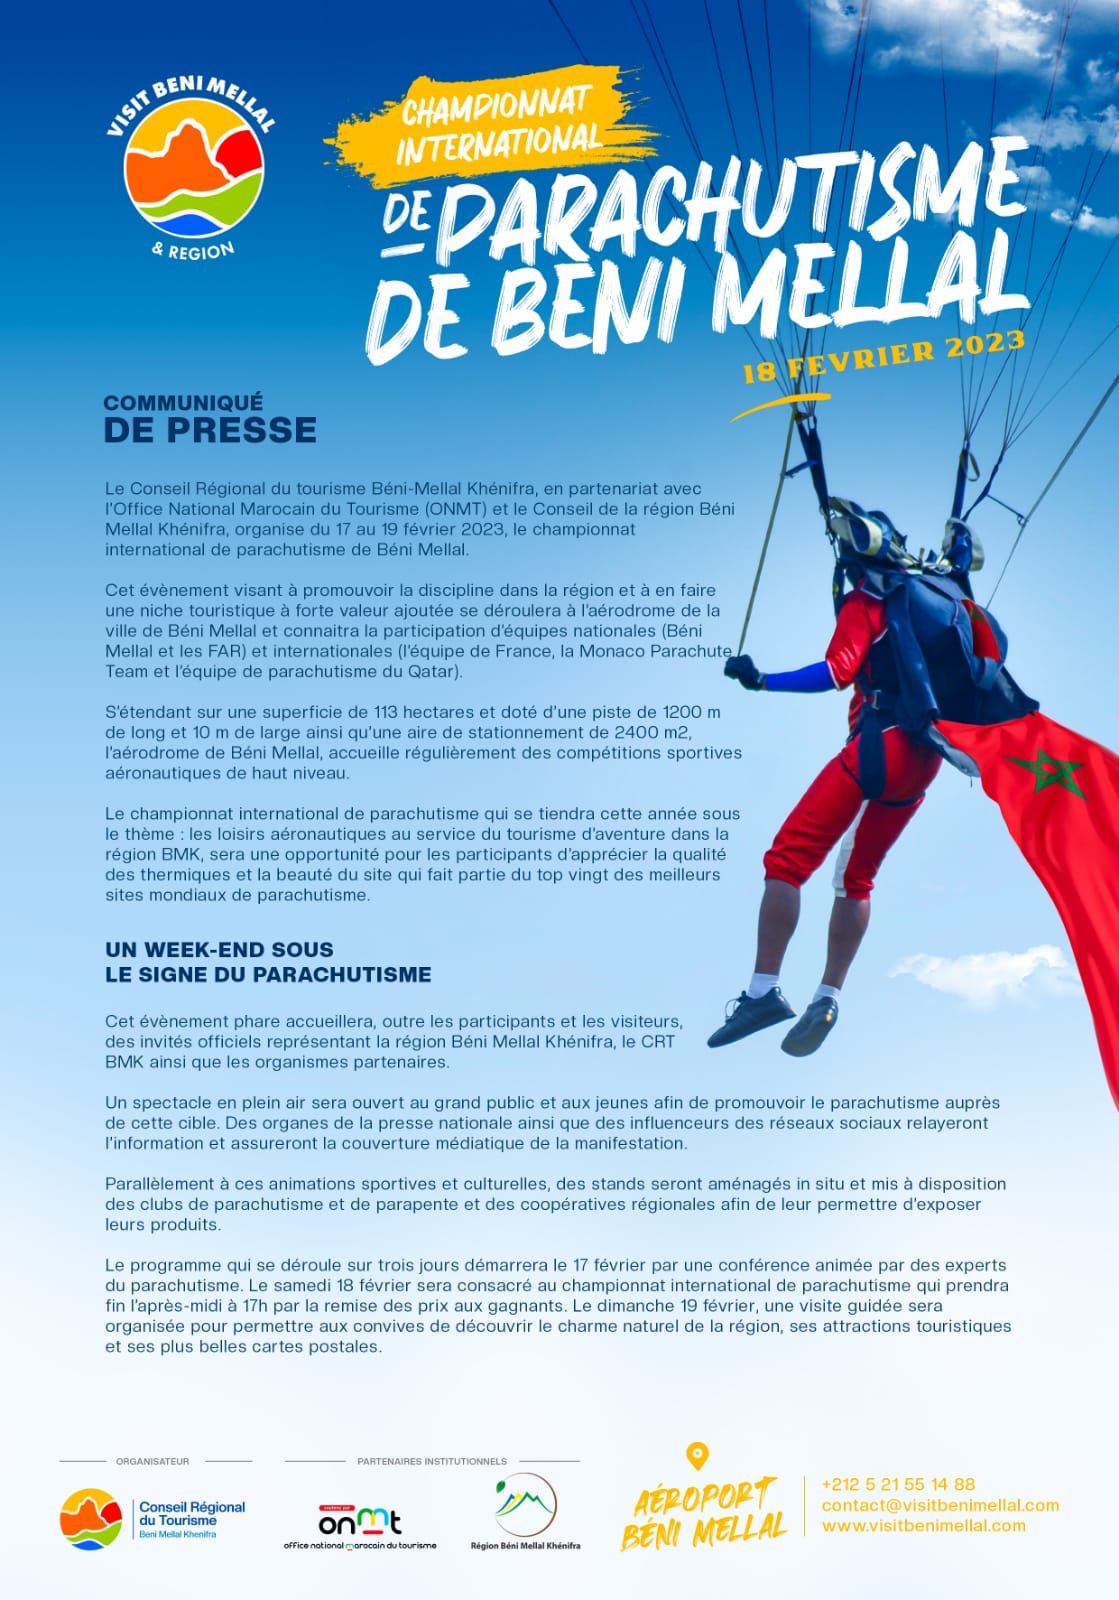 Le championnat international de parachutisme à Béni Mellal